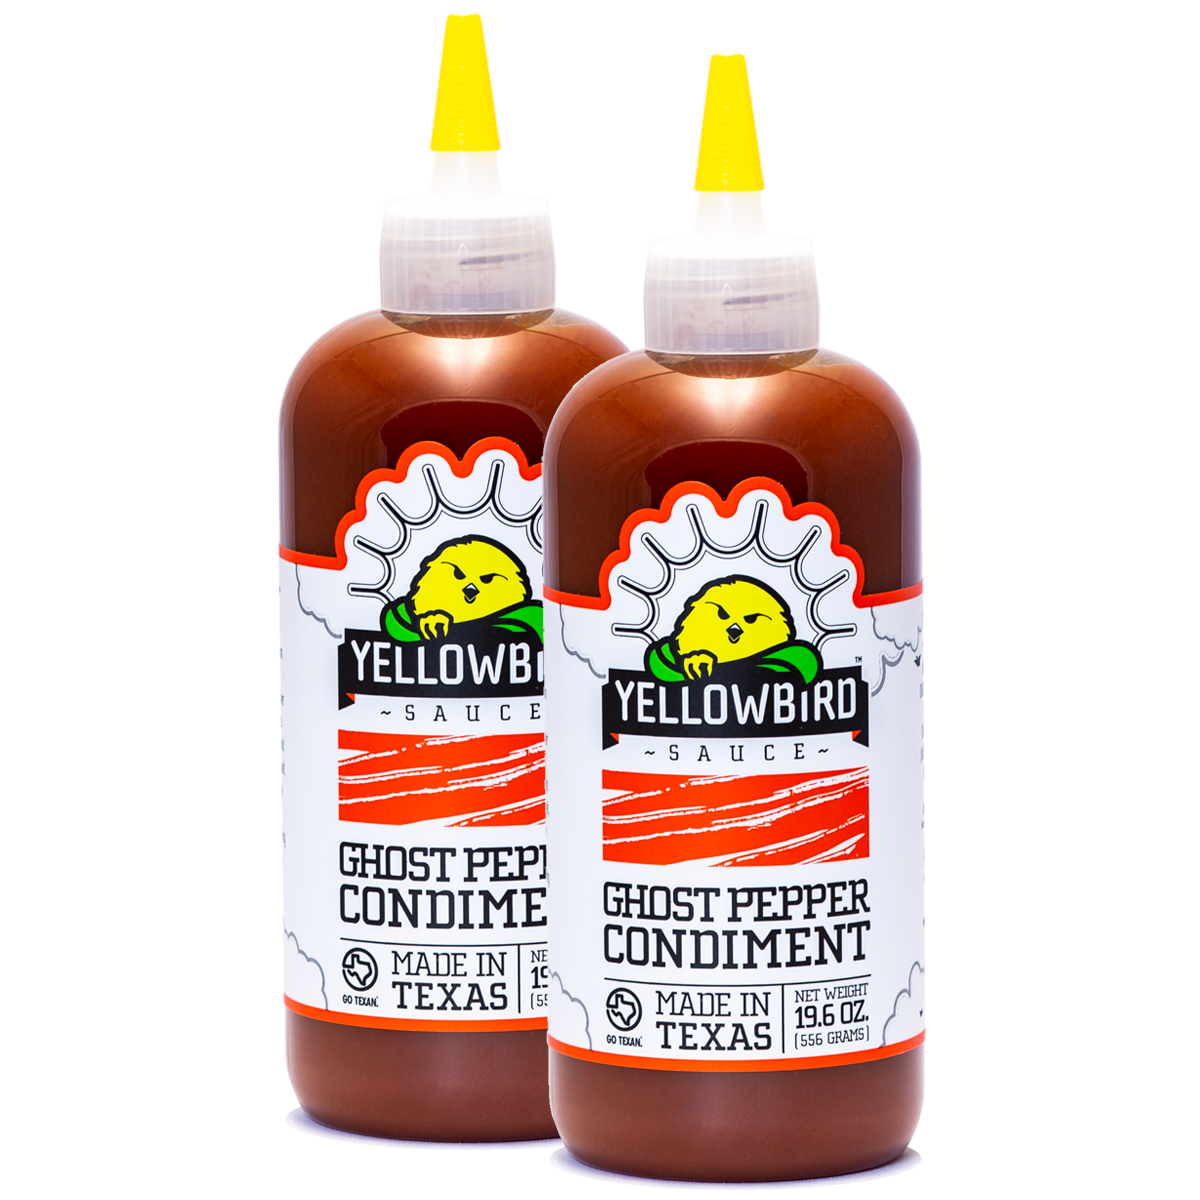 Original Ghost Pepper Hot Sauce Multipacks